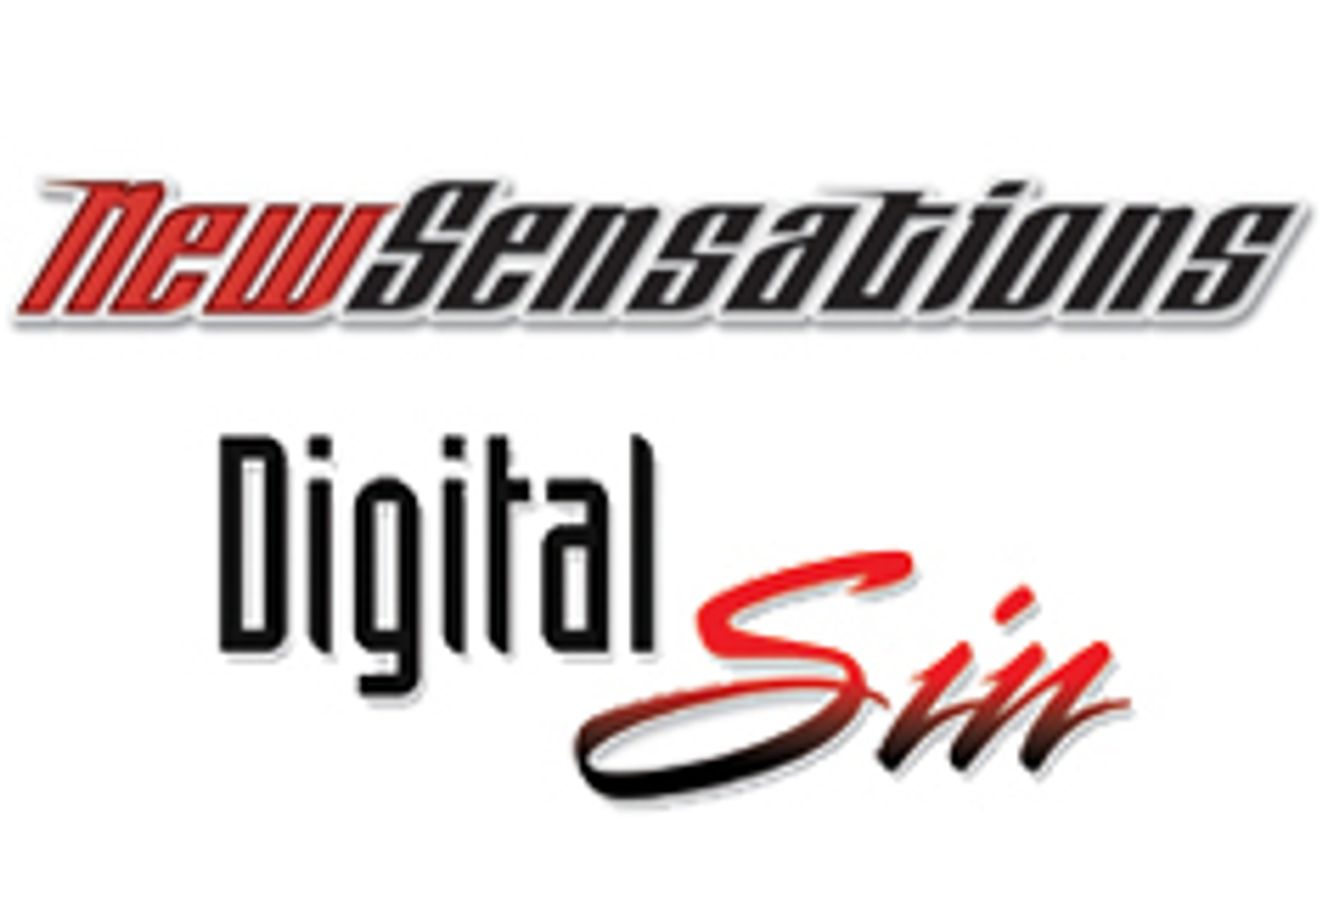 New Sensations / Digital Sin